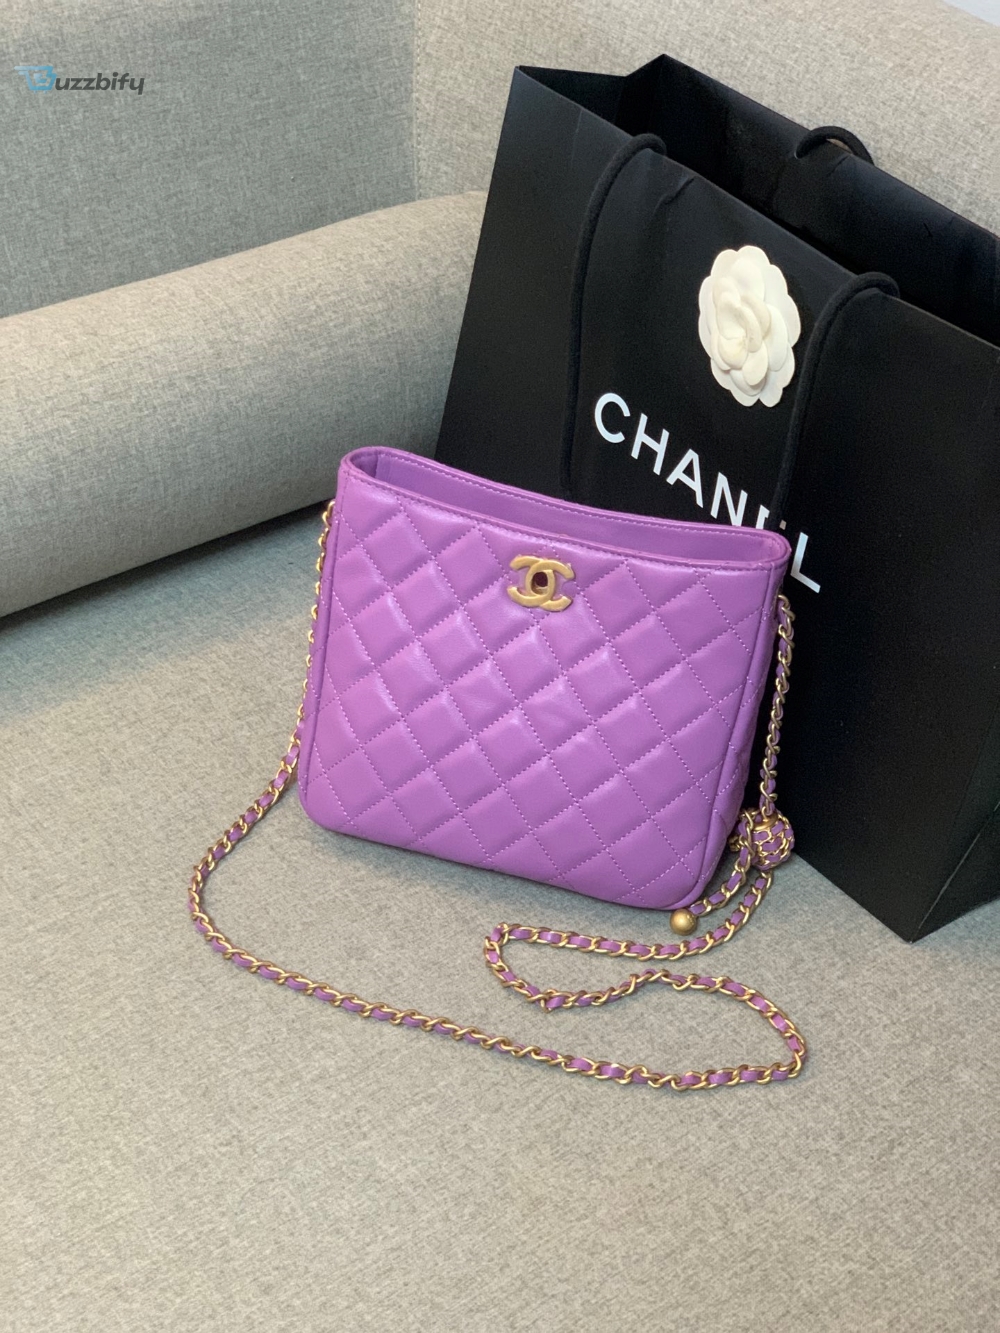 Chanel Hobo Handbag Purple Bag For Women 16Cm6in